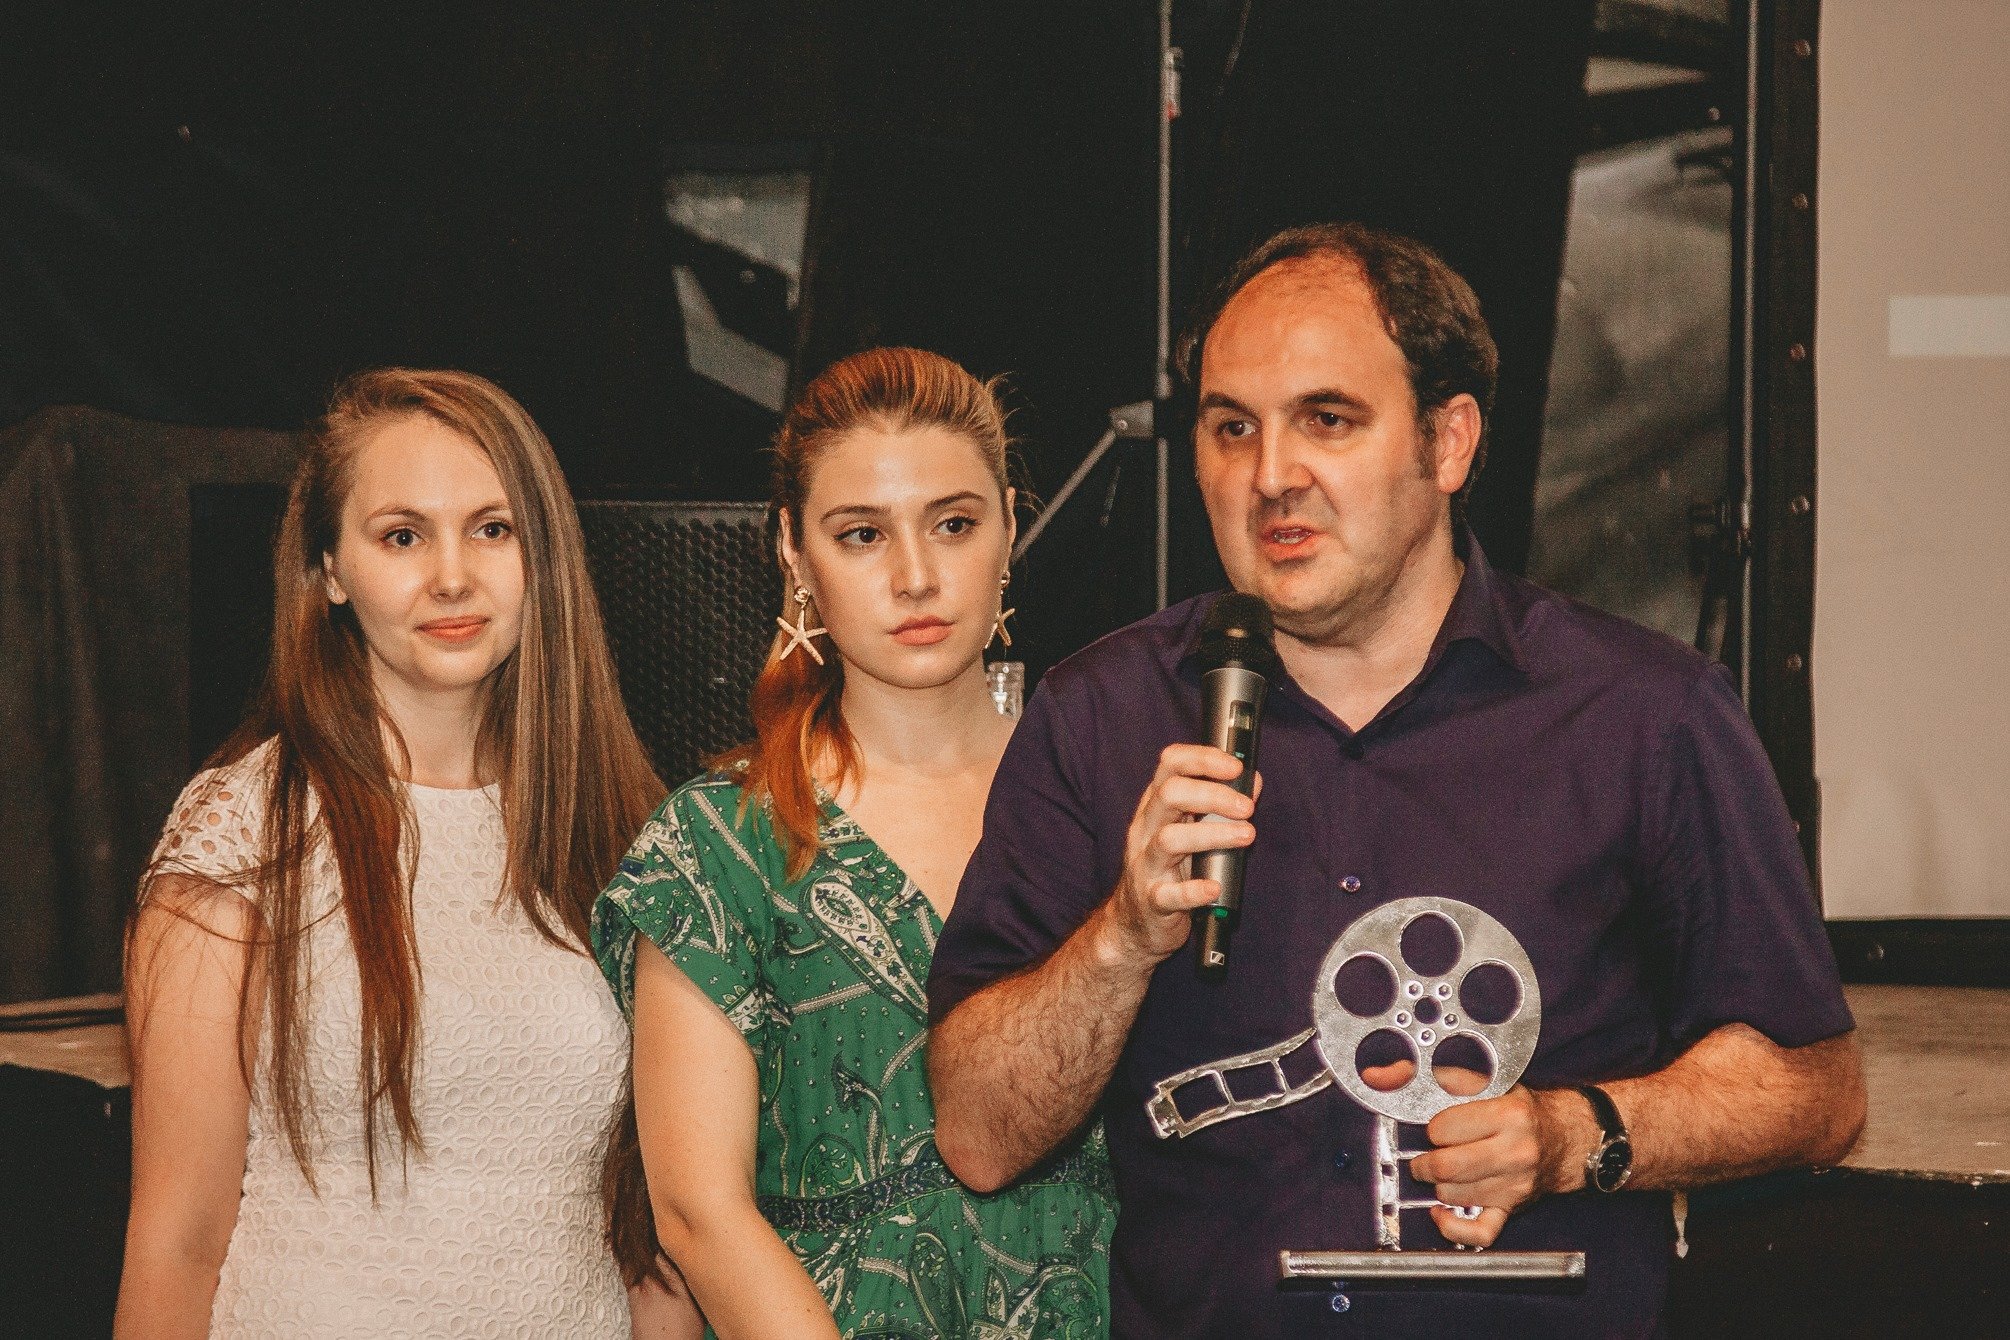  Filmul realizat de USLIP a câştigat marele premiu la o competiţie în cadrul SFR